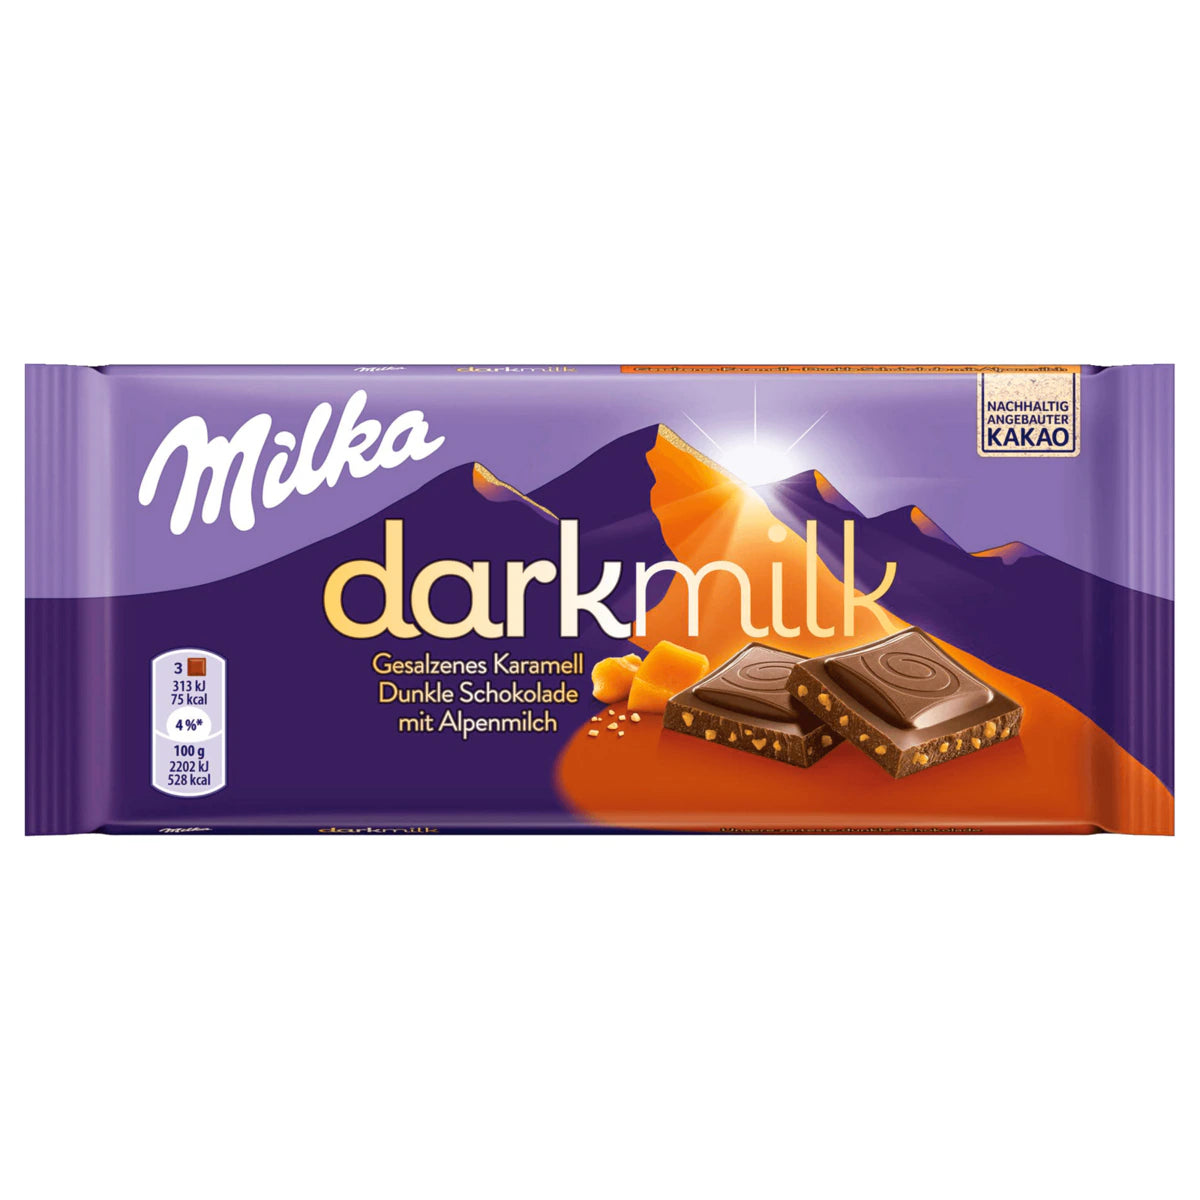 Milka darkmilk Schokolade Gesalzenes Karamell - 85 g